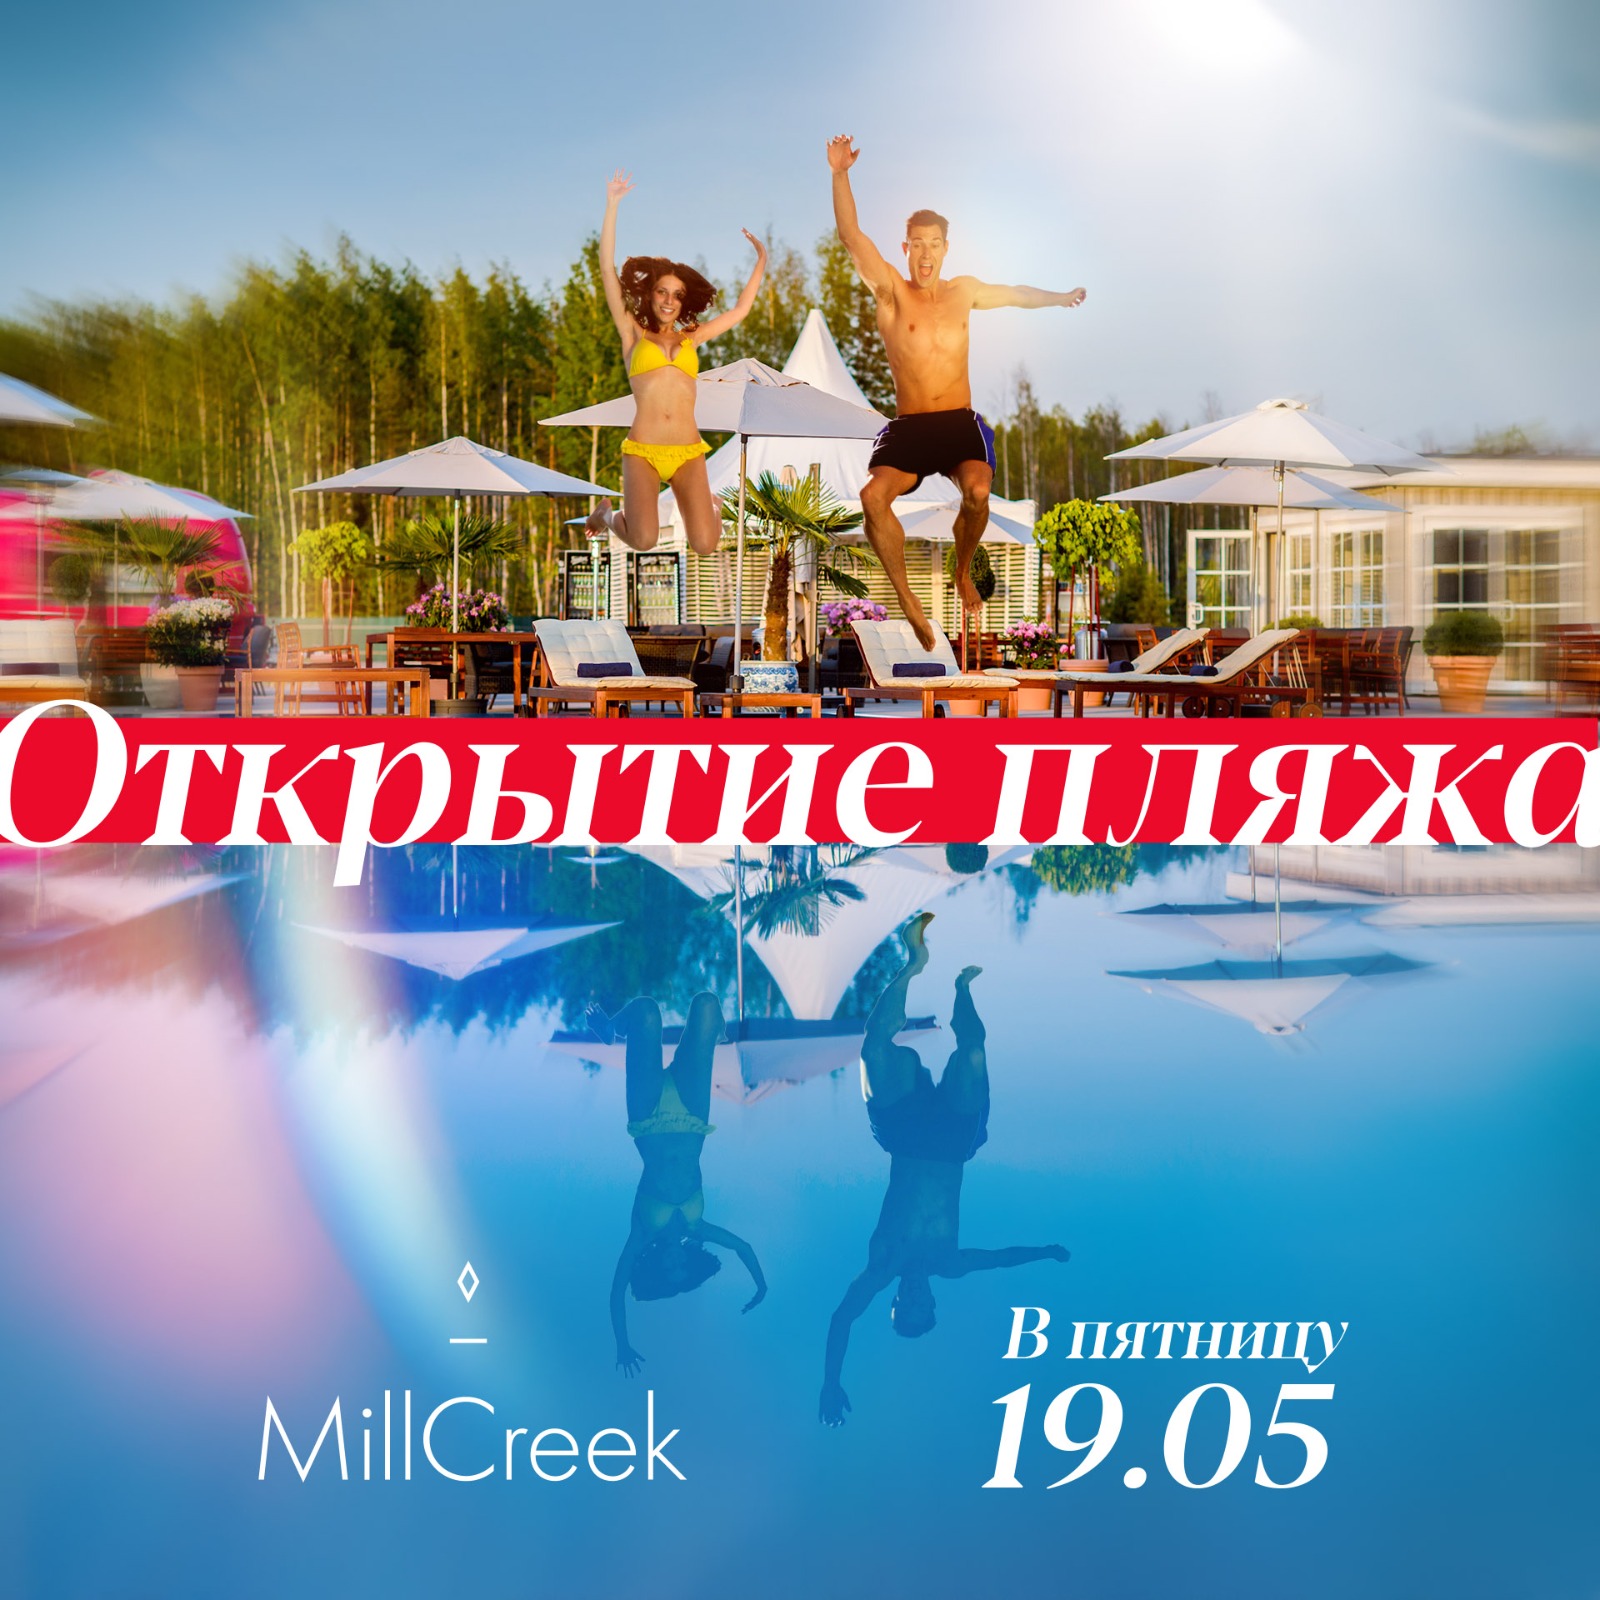 19 мая открытие Пляжного клуба MillCreek. 